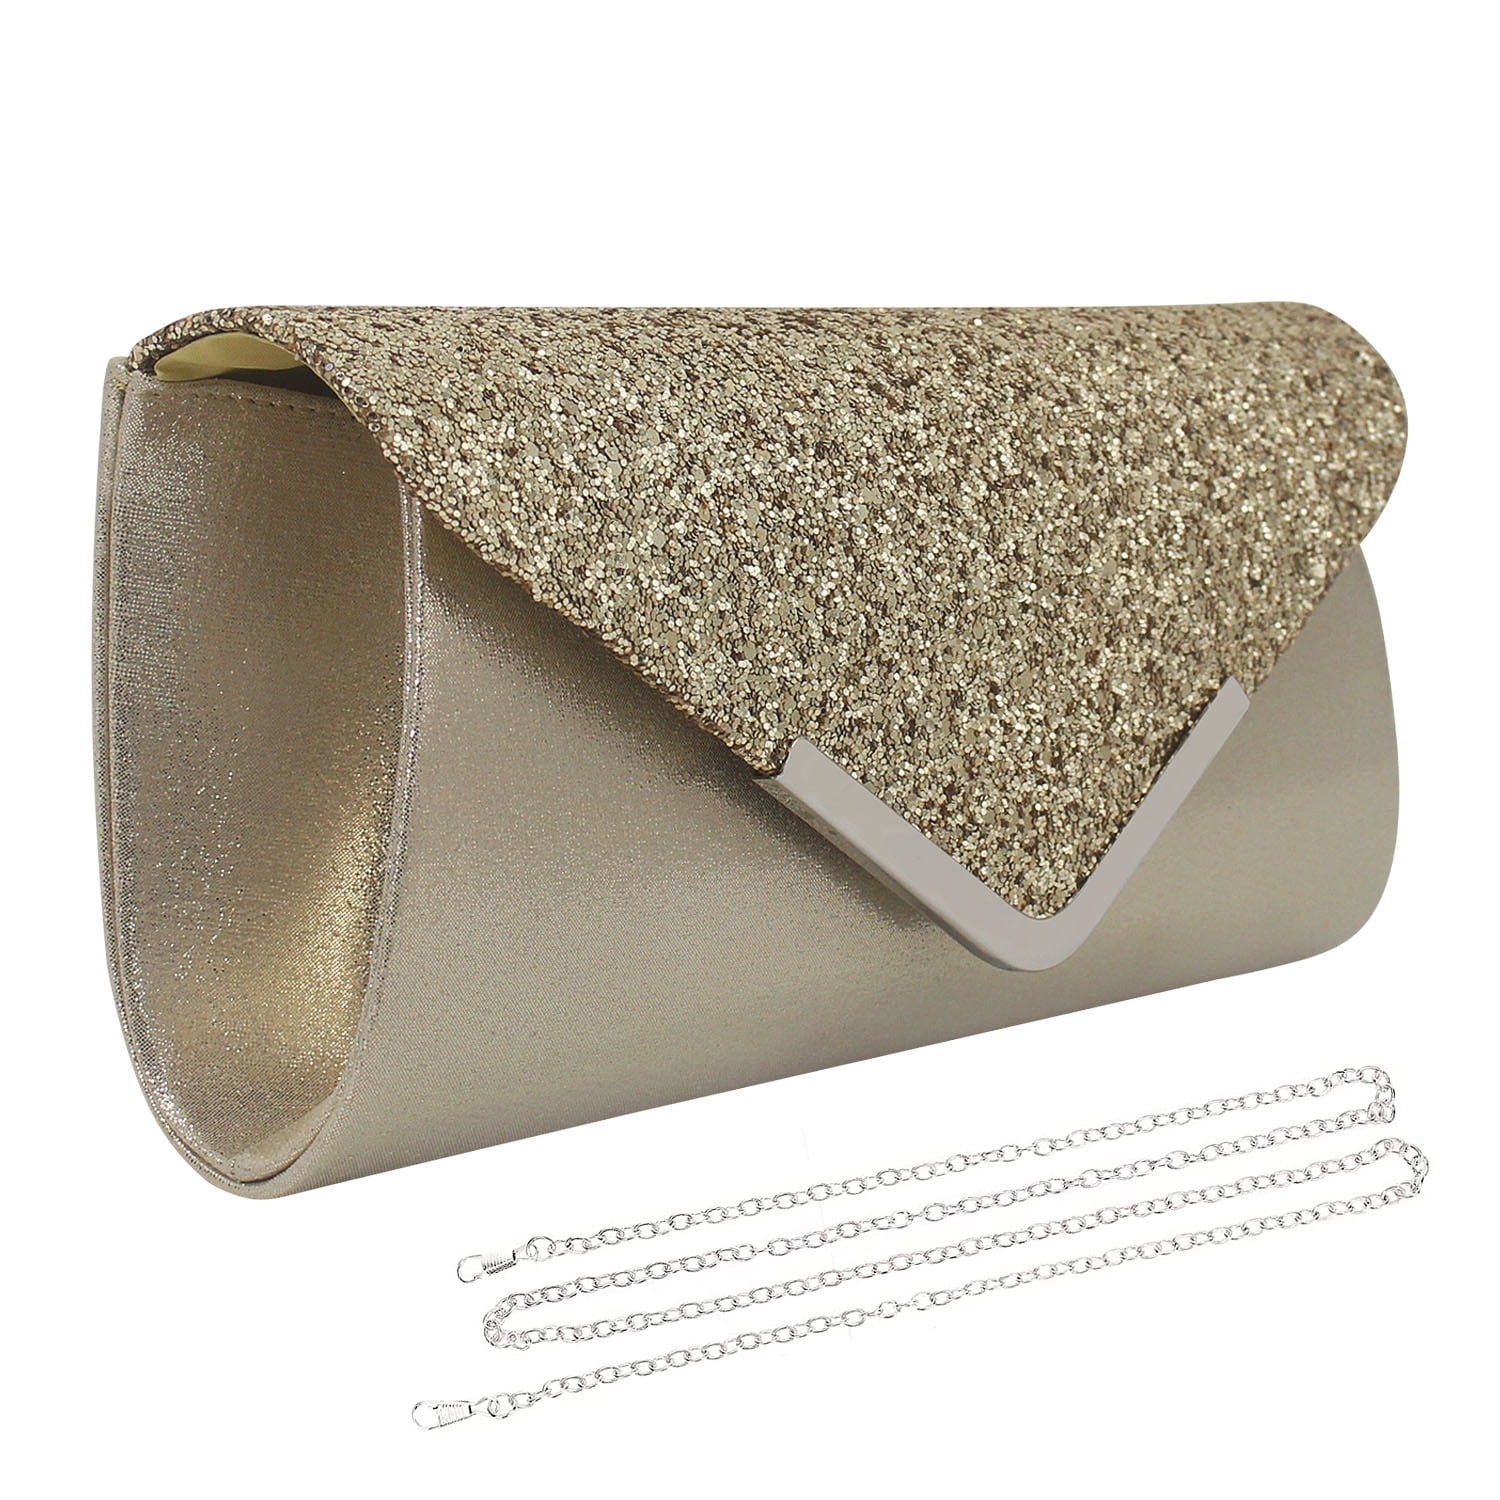 Gold Clutch Bag-18” Chain Shoulder Option Wedding/Mardi Gras/Prom/Etc. Purse!  | eBay